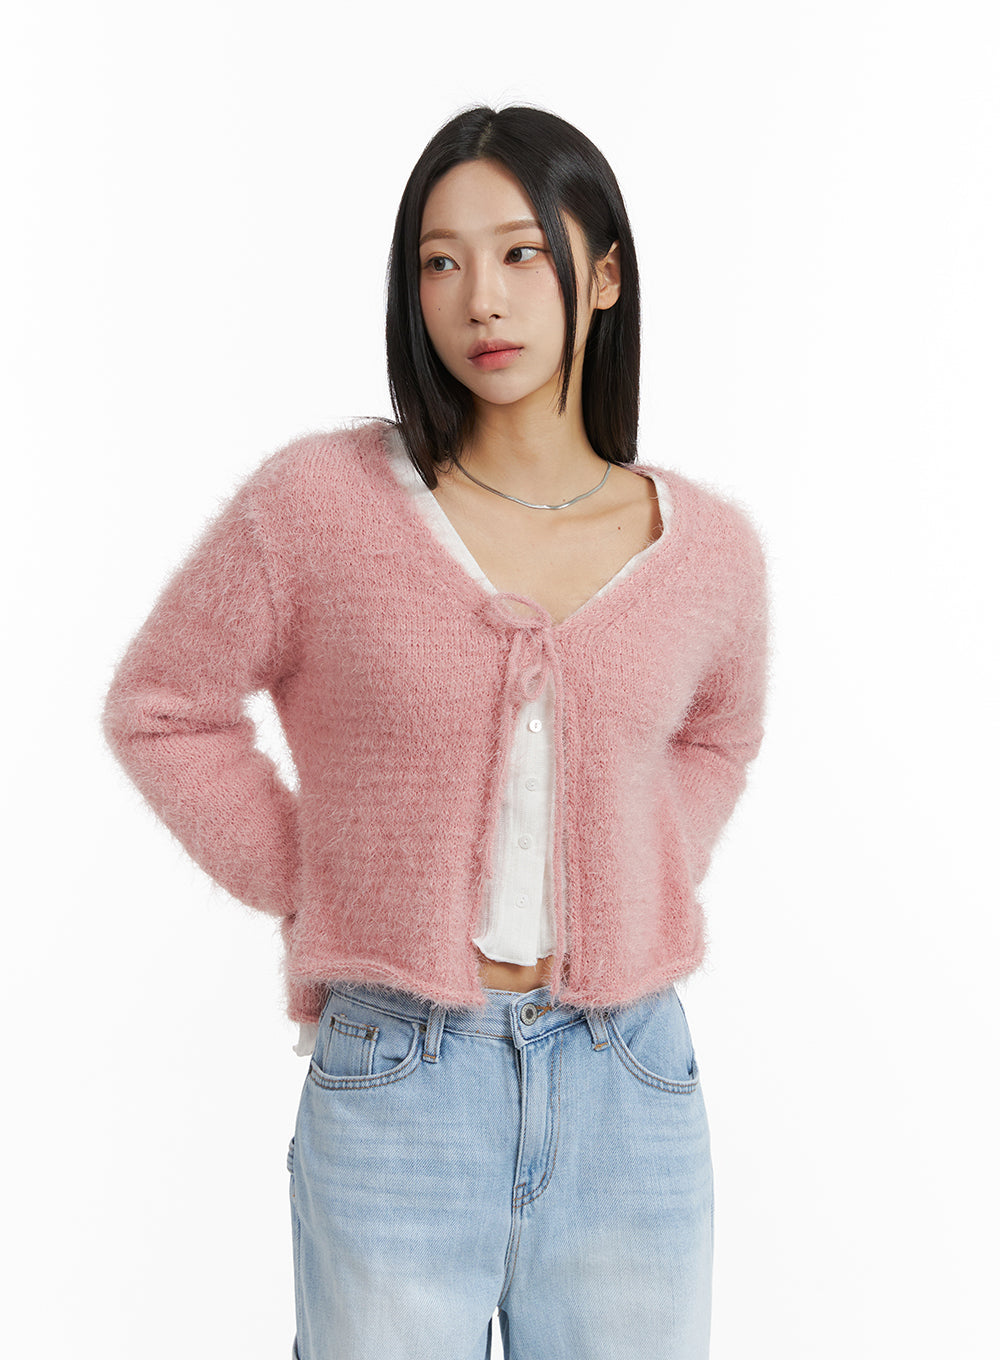 ribbon-crop-knit-sweater-cj408